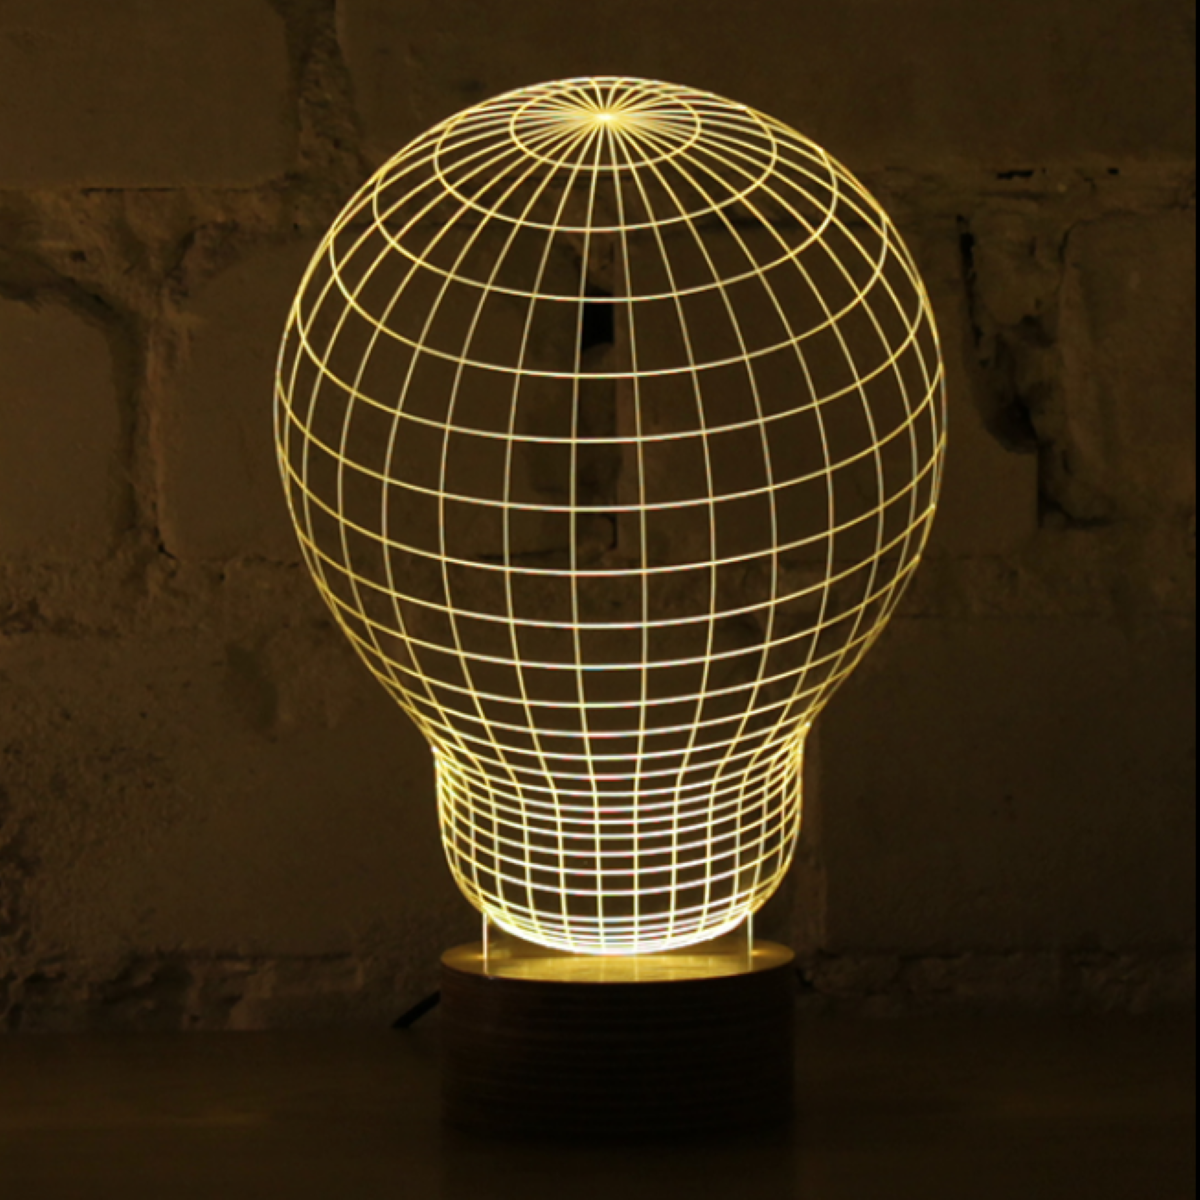 Lampade LED optical illusion Studio Cheha